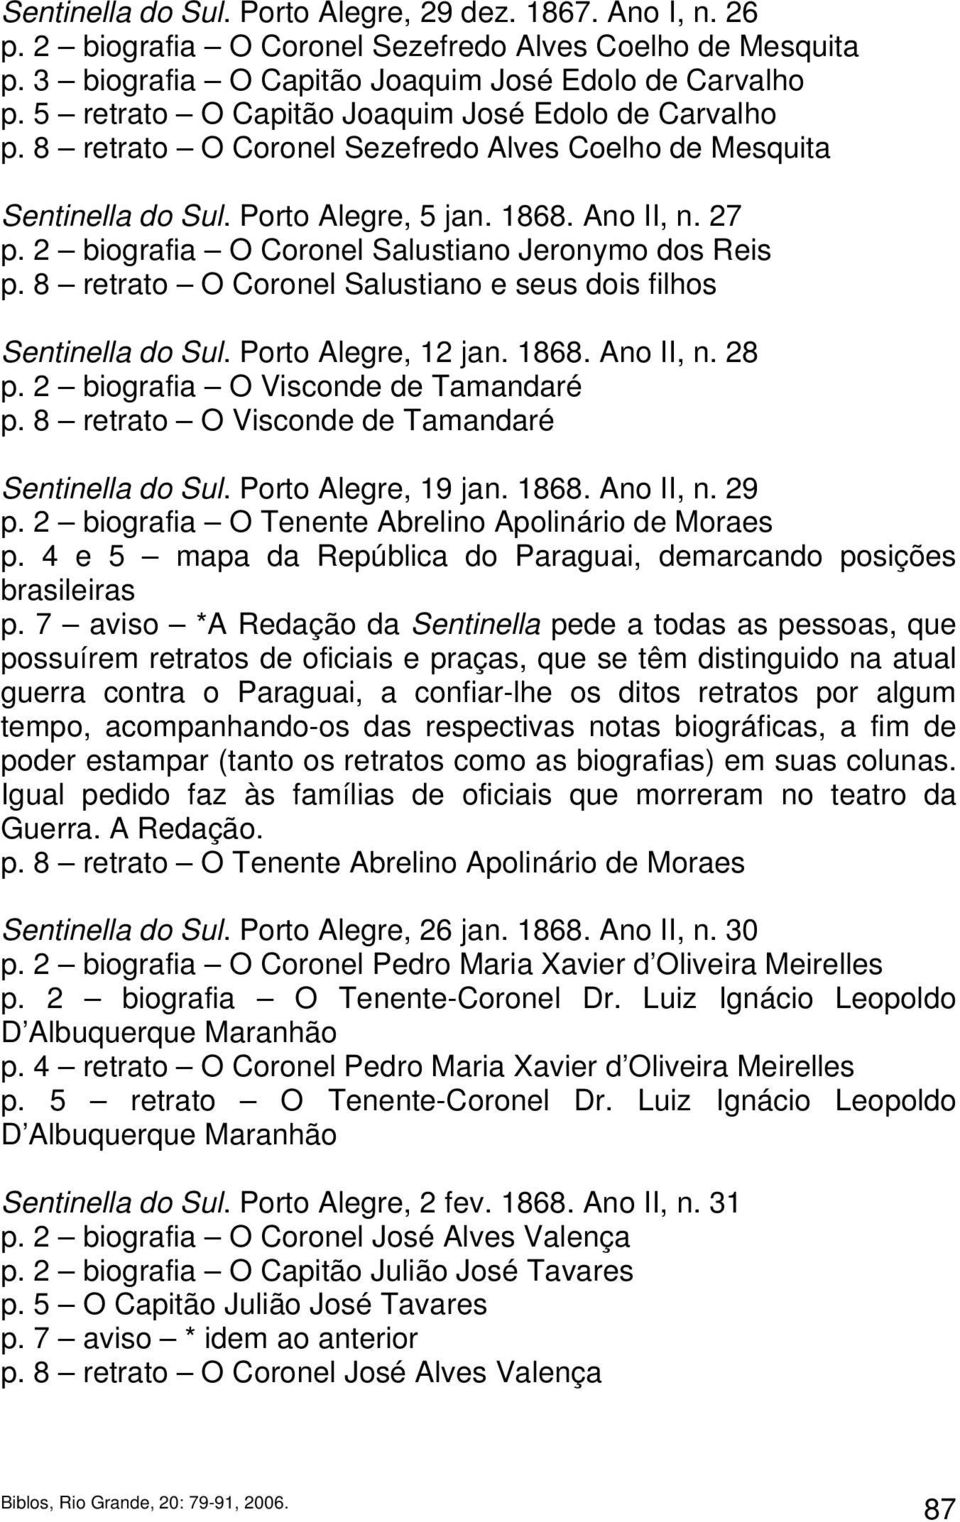 2 biografia O Coronel Salustiano Jeronymo dos Reis p. 8 retrato O Coronel Salustiano e seus dois filhos Sentinella do Sul. Porto Alegre, 12 jan. 1868. Ano II, n. 28 p.